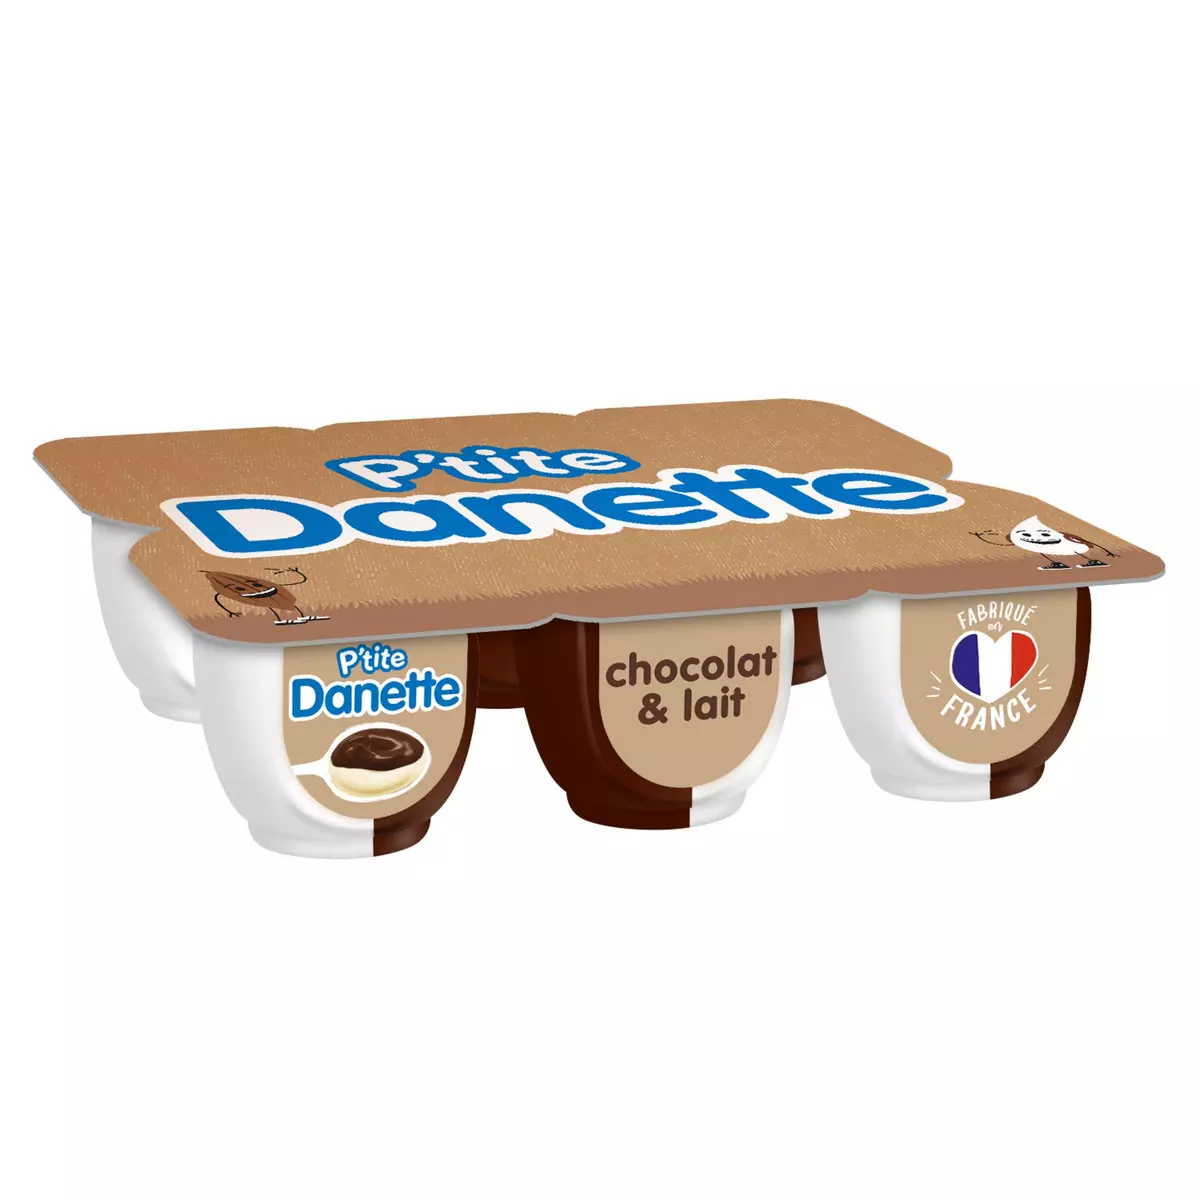 DANETTE Doubles saveur - Crème dessert chocolat et lait 6x70g pas cher 